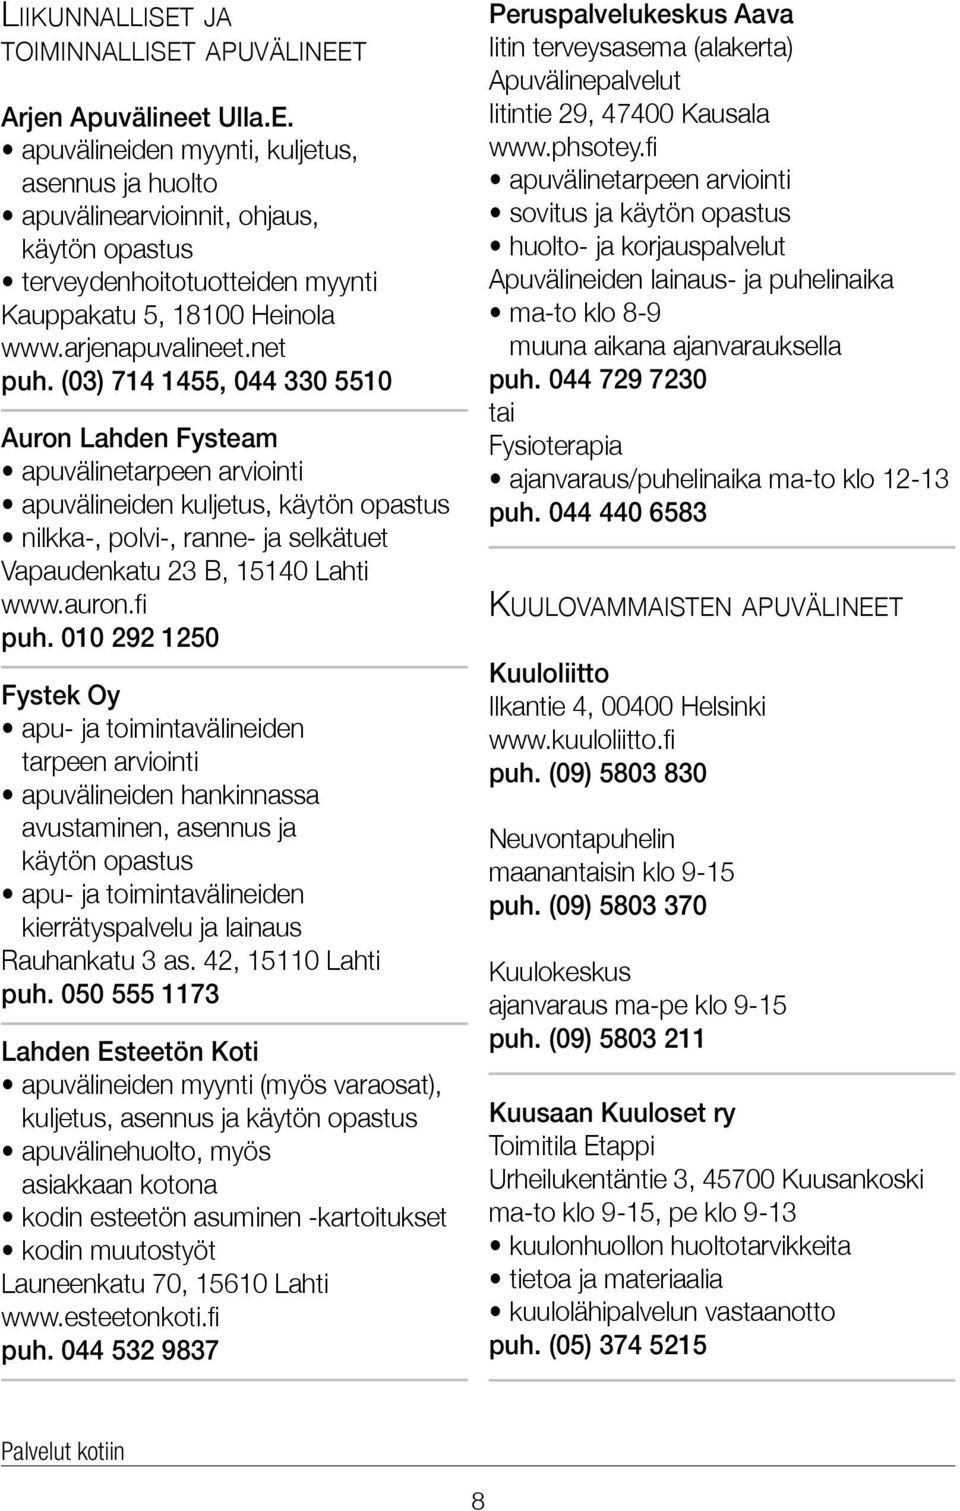 (03) 714 1455, 044 330 5510 Auron Lahden Fysteam apuvälinetarpeen arviointi apuvälineiden kuljetus, käytön opastus nilkka-, polvi-, ranne- ja selkätuet Vapaudenkatu 23 B, 15140 Lahti www.auron.fi puh.